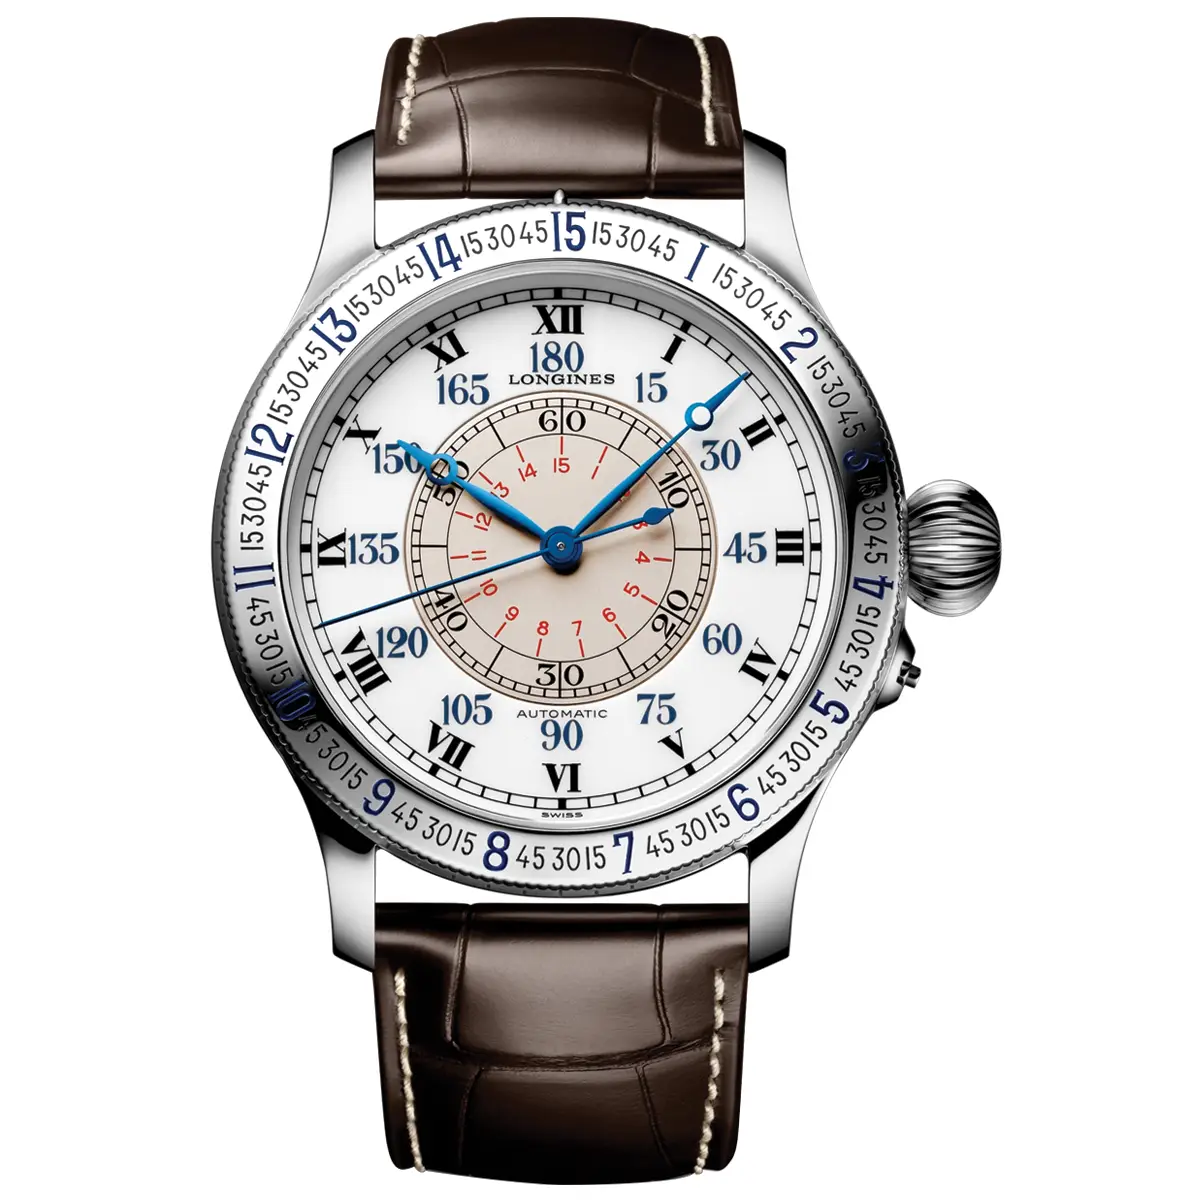 Đồng hồ Longines Heritage Avigation The Lindbergh Hour Angle Watch L2.678.4.11.0 mặt số màu trắng. Dây đeo bằng da. Thân vỏ bằng thép.